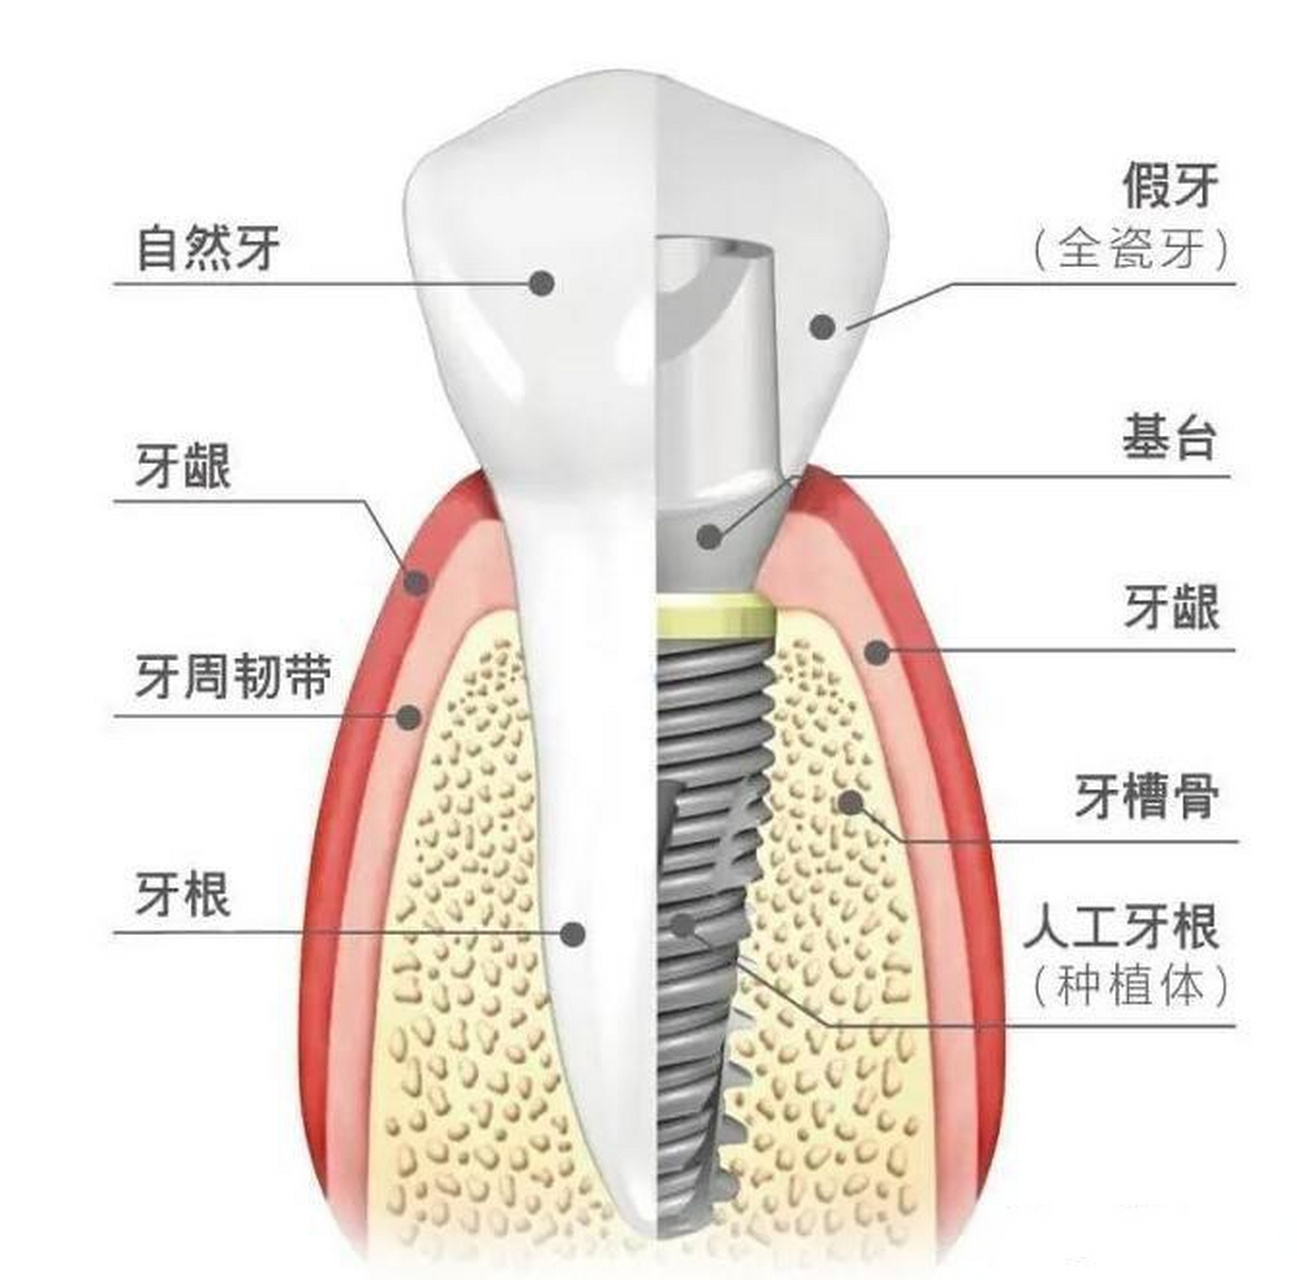 种植牙种植牙是一种常见的牙齿缺失修复方式,它通过在缺失牙齿的位置